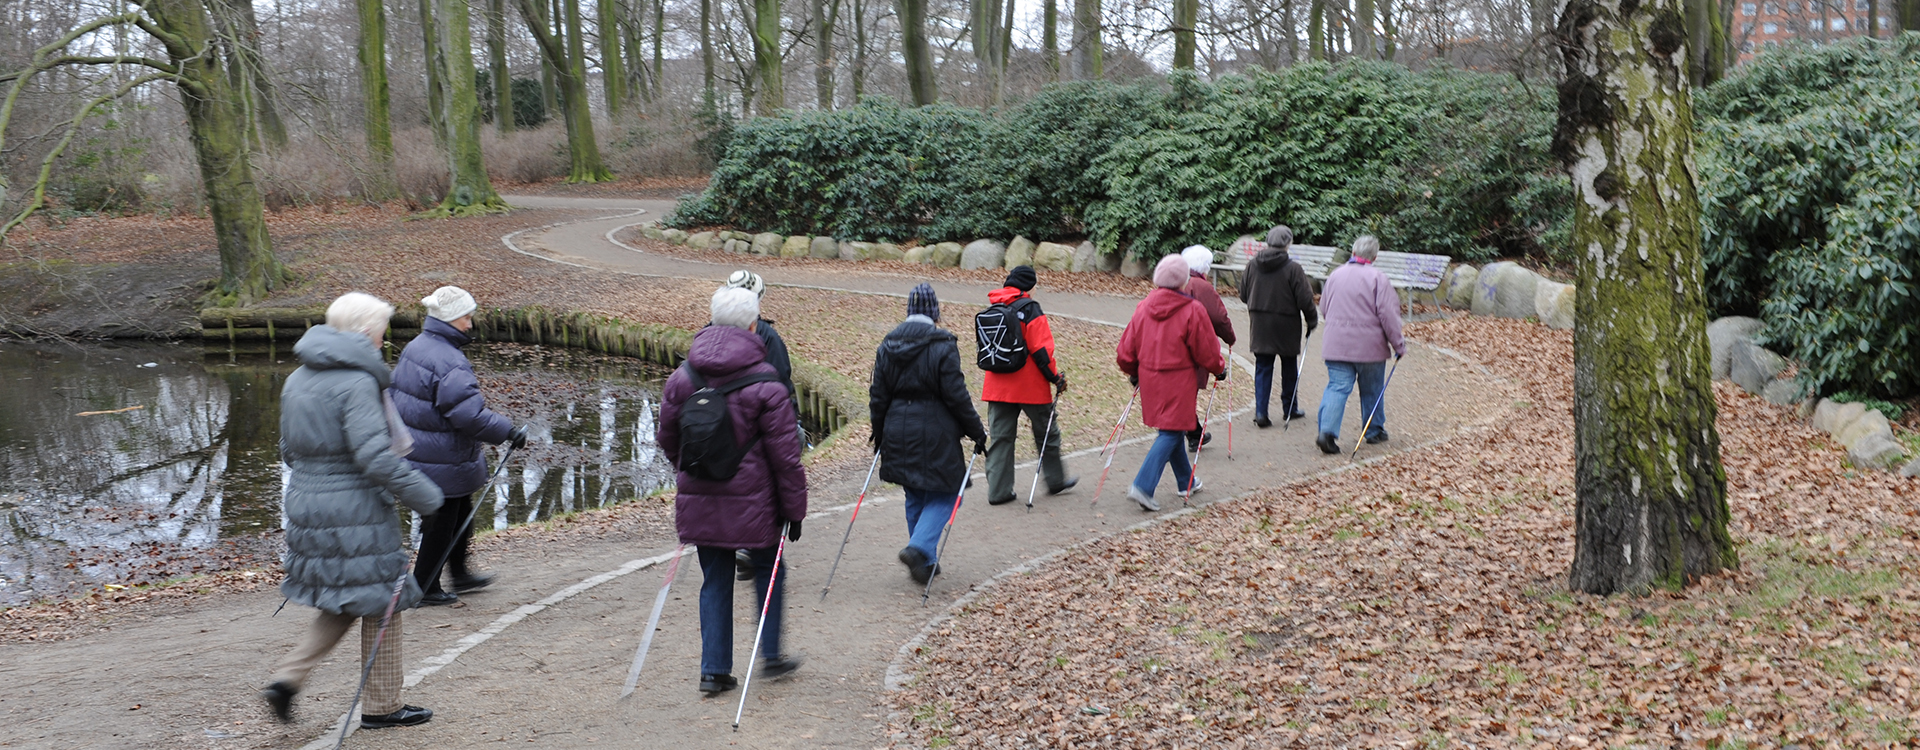 Eldre personer som går tur. Foto:Colourbox